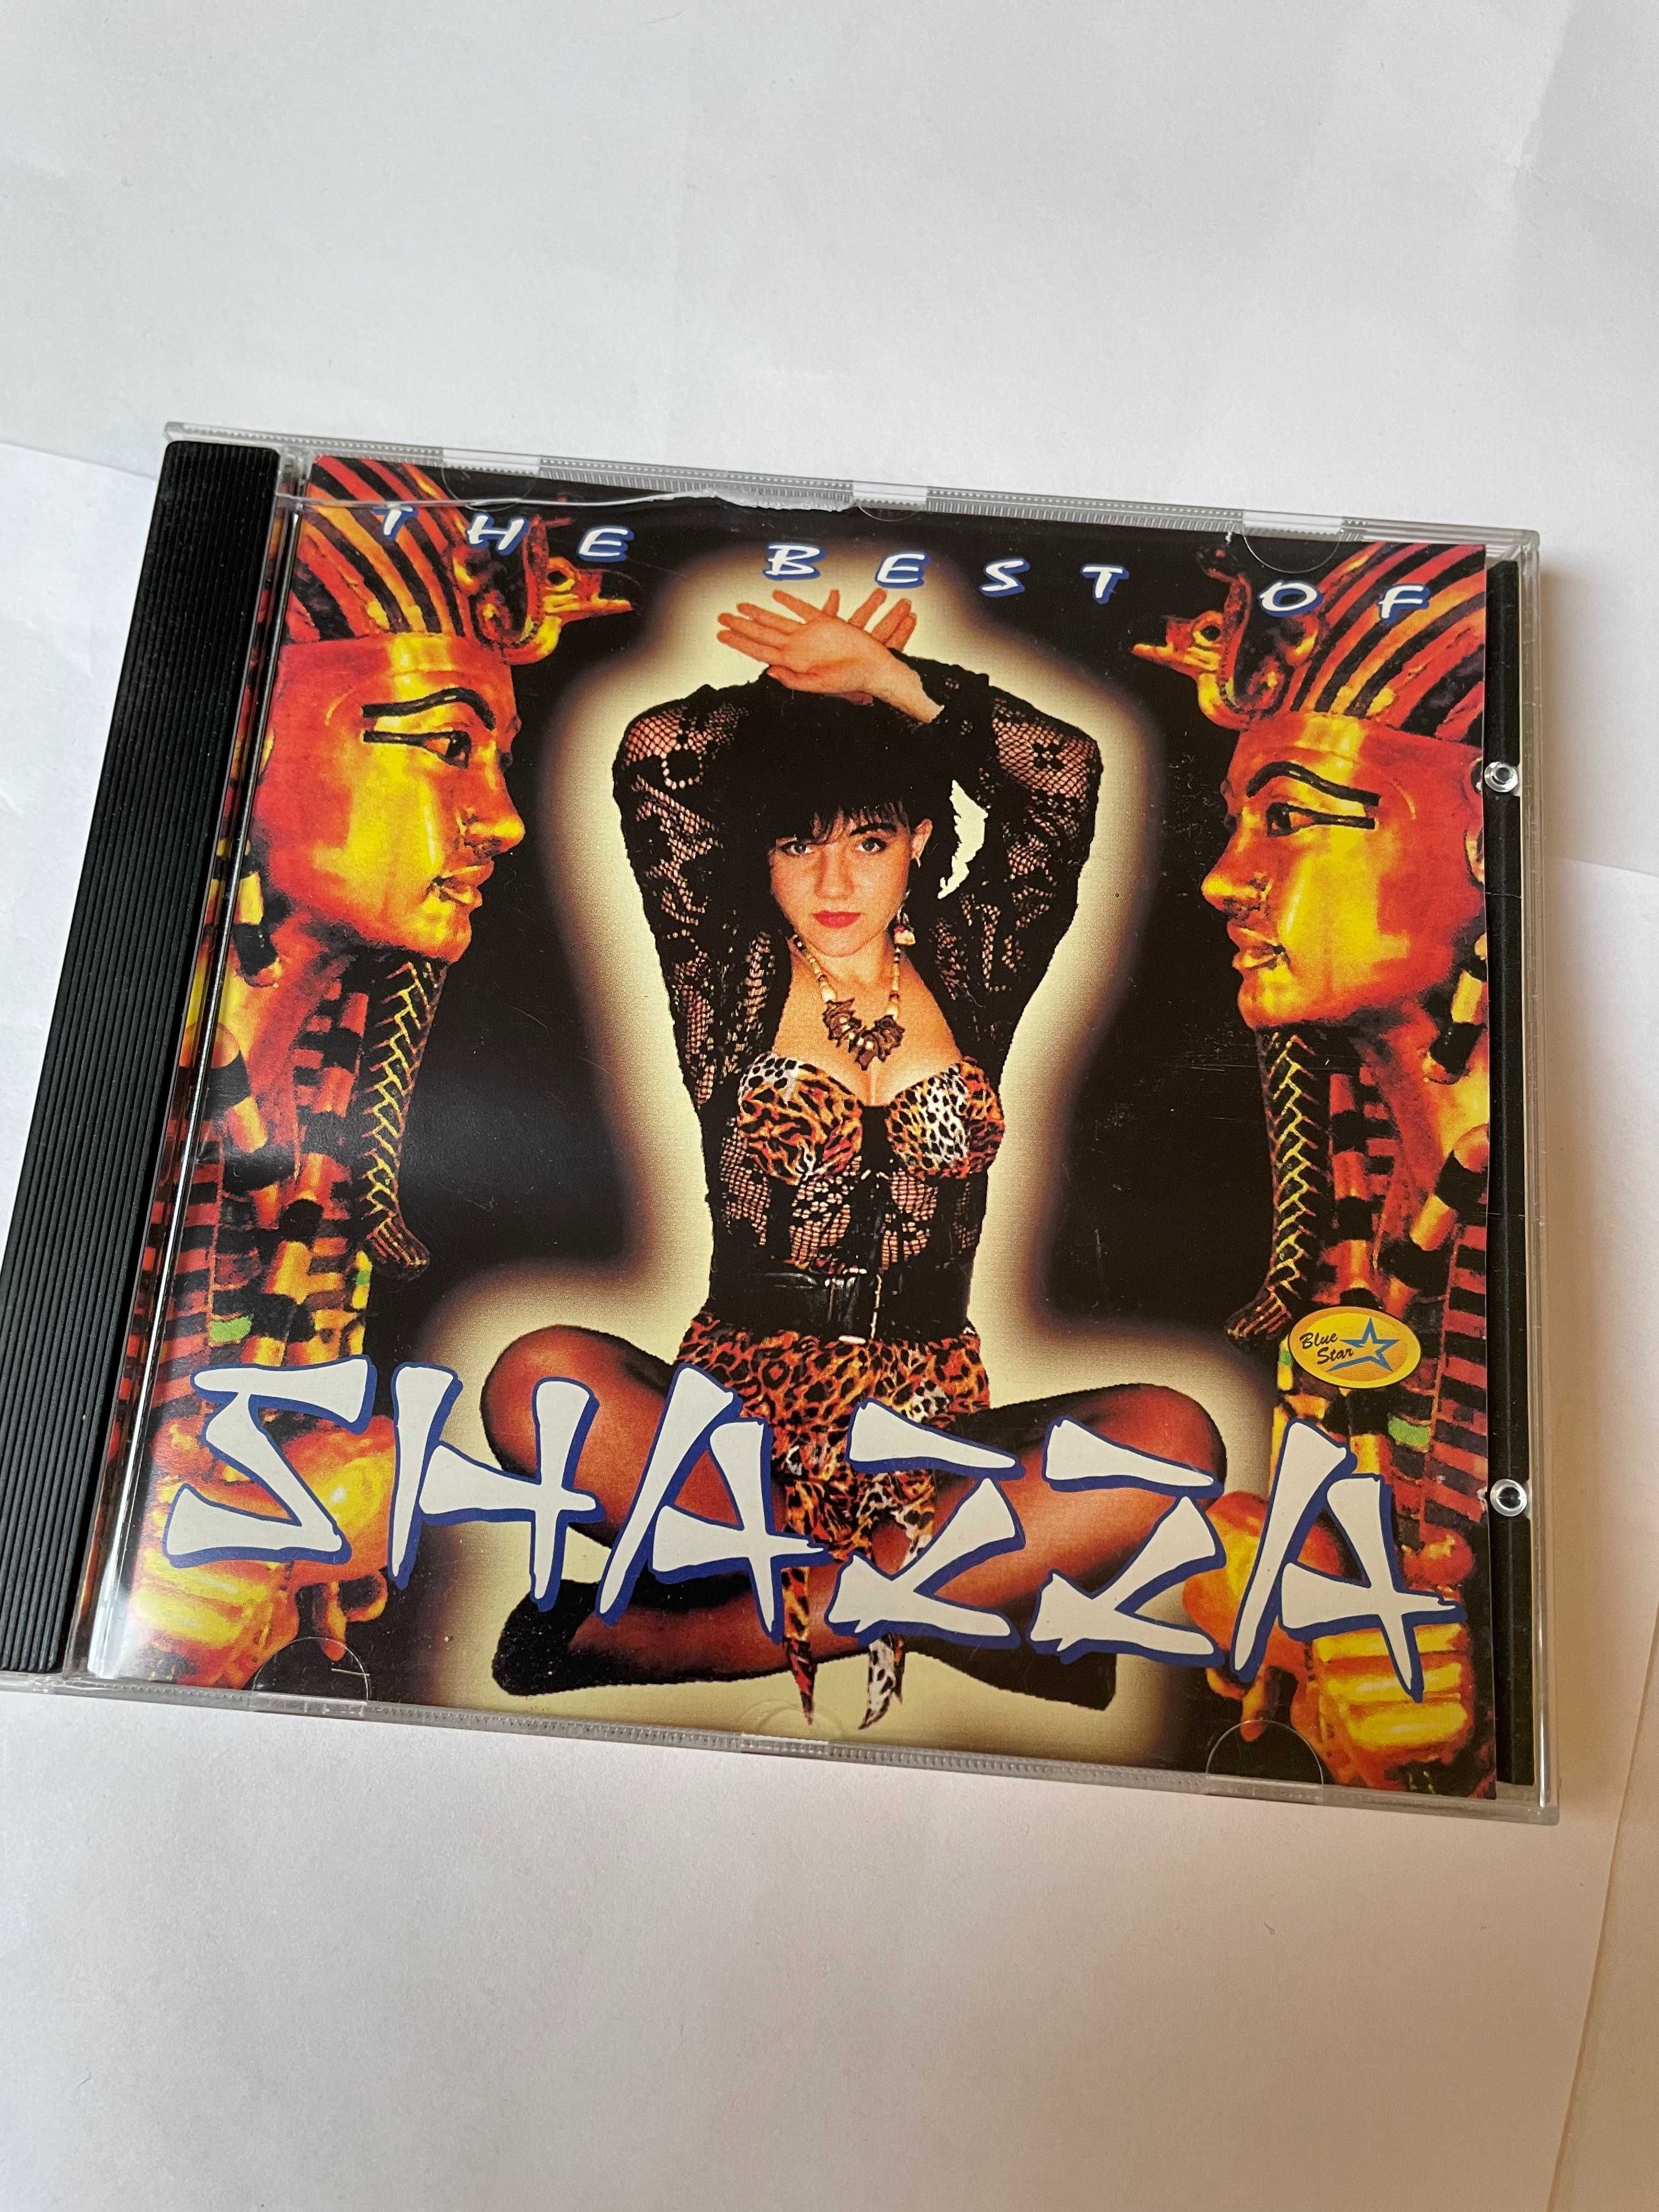 Shazza – The Best Of - 1 wydanie - unikat! CD